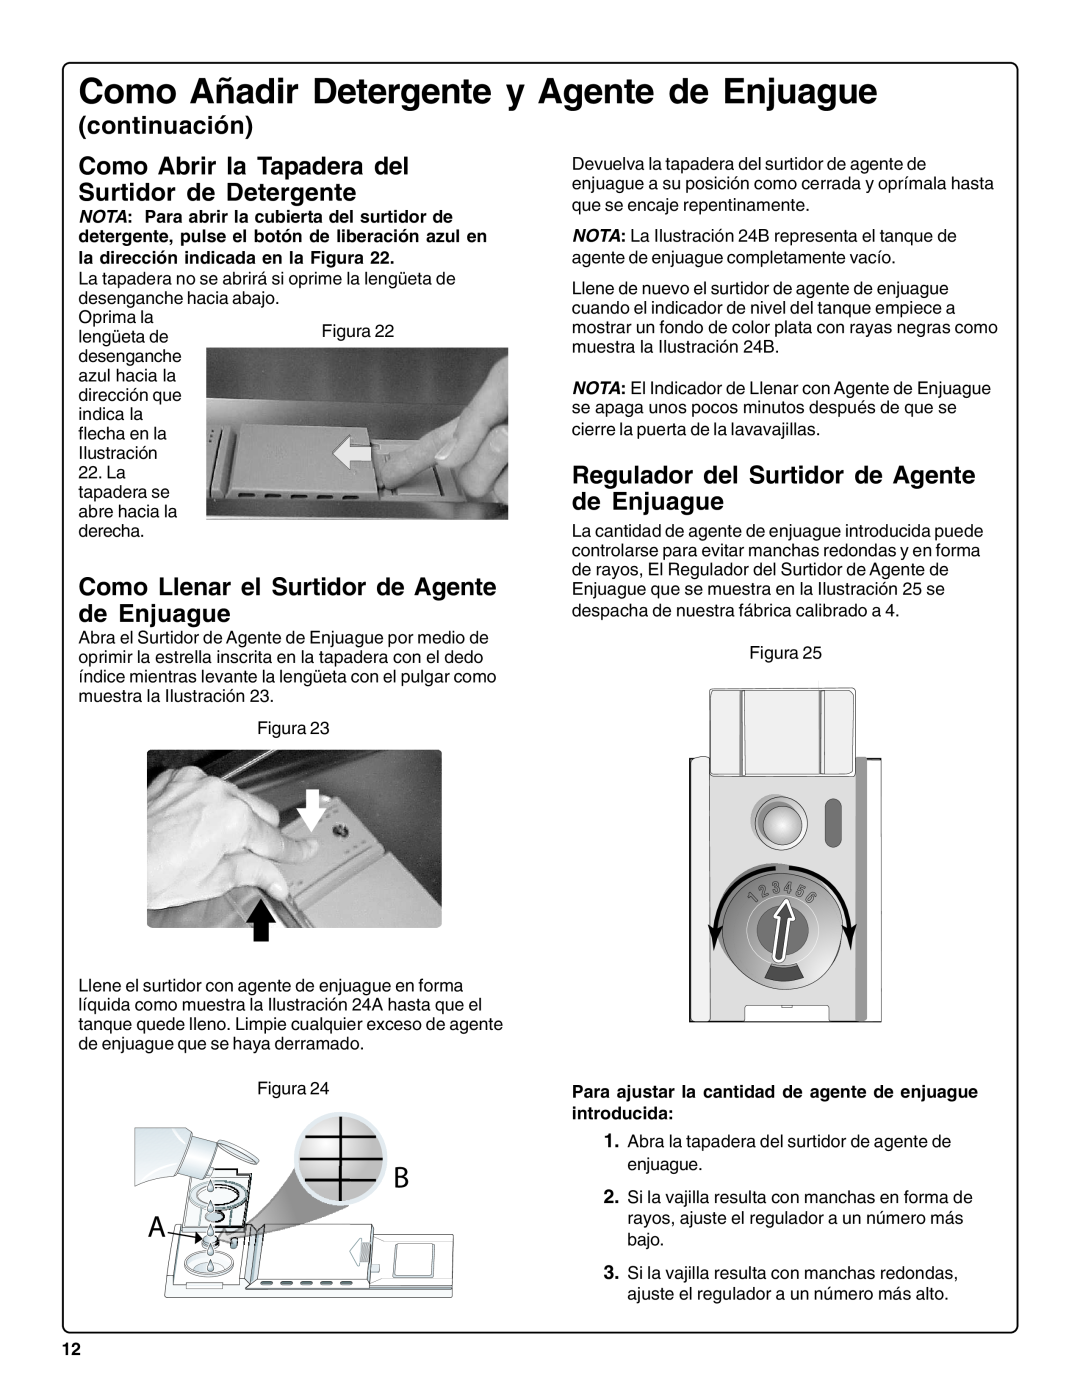 Bosch Appliances SHE66C Como Abrir la Tapadera del Surtidor de Detergente, Como Llenar el Surtidor de Agente de Enjuague 